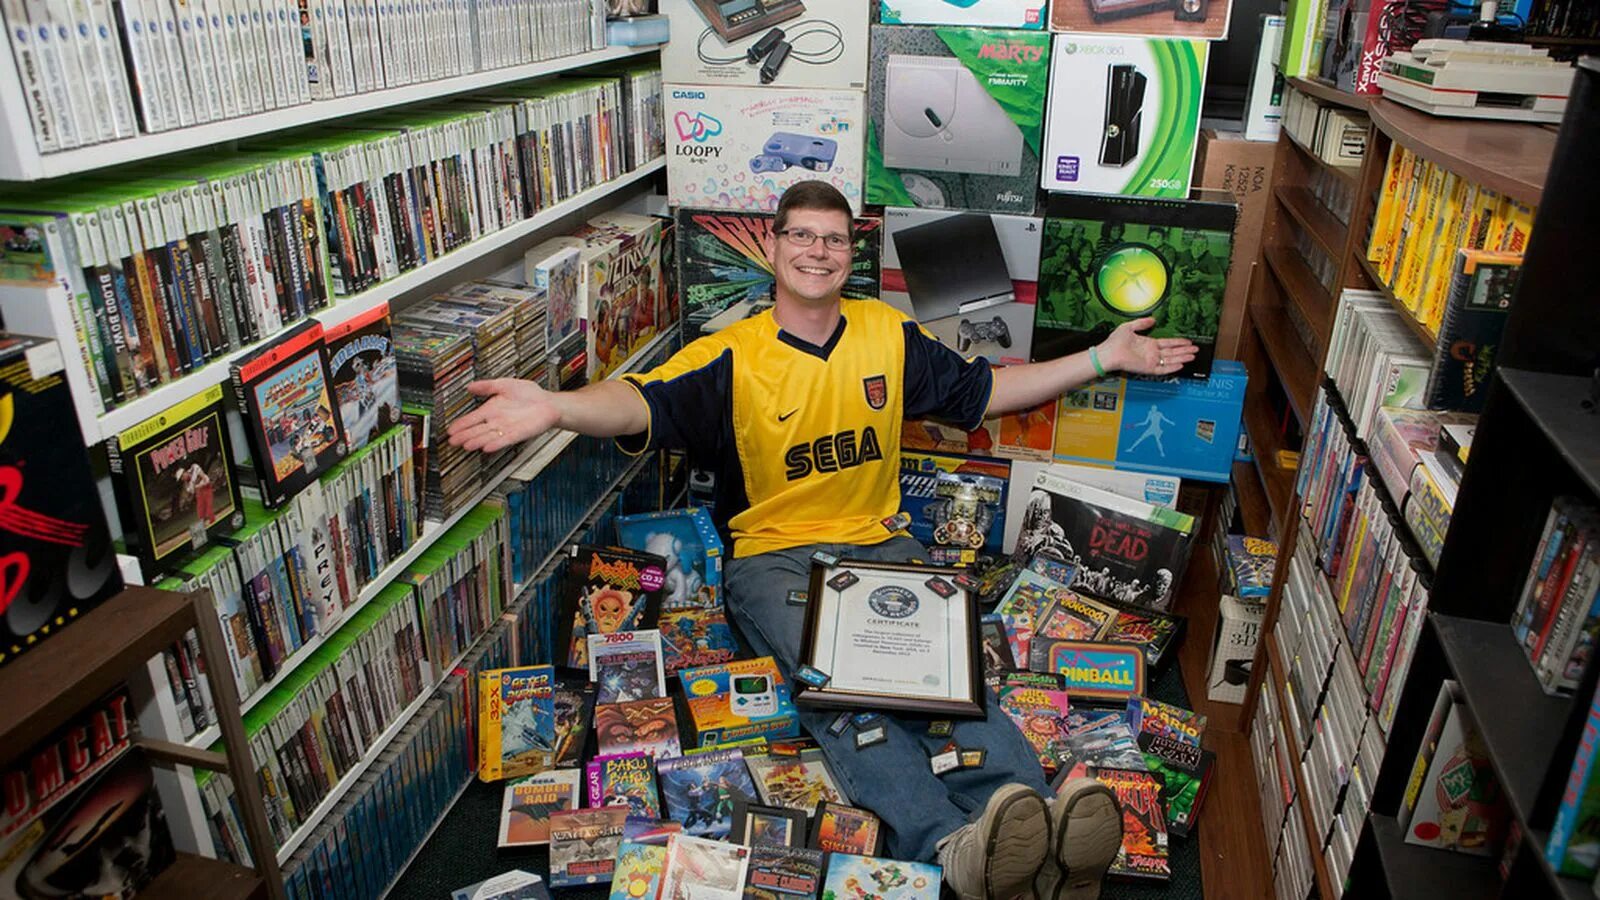 Самая большая коллекция игр. Коллекционер игровых приставок. Коллекционирование компьютерных игр. Самая большая коллекция видеоигр в мире. Литература компьютерных игр